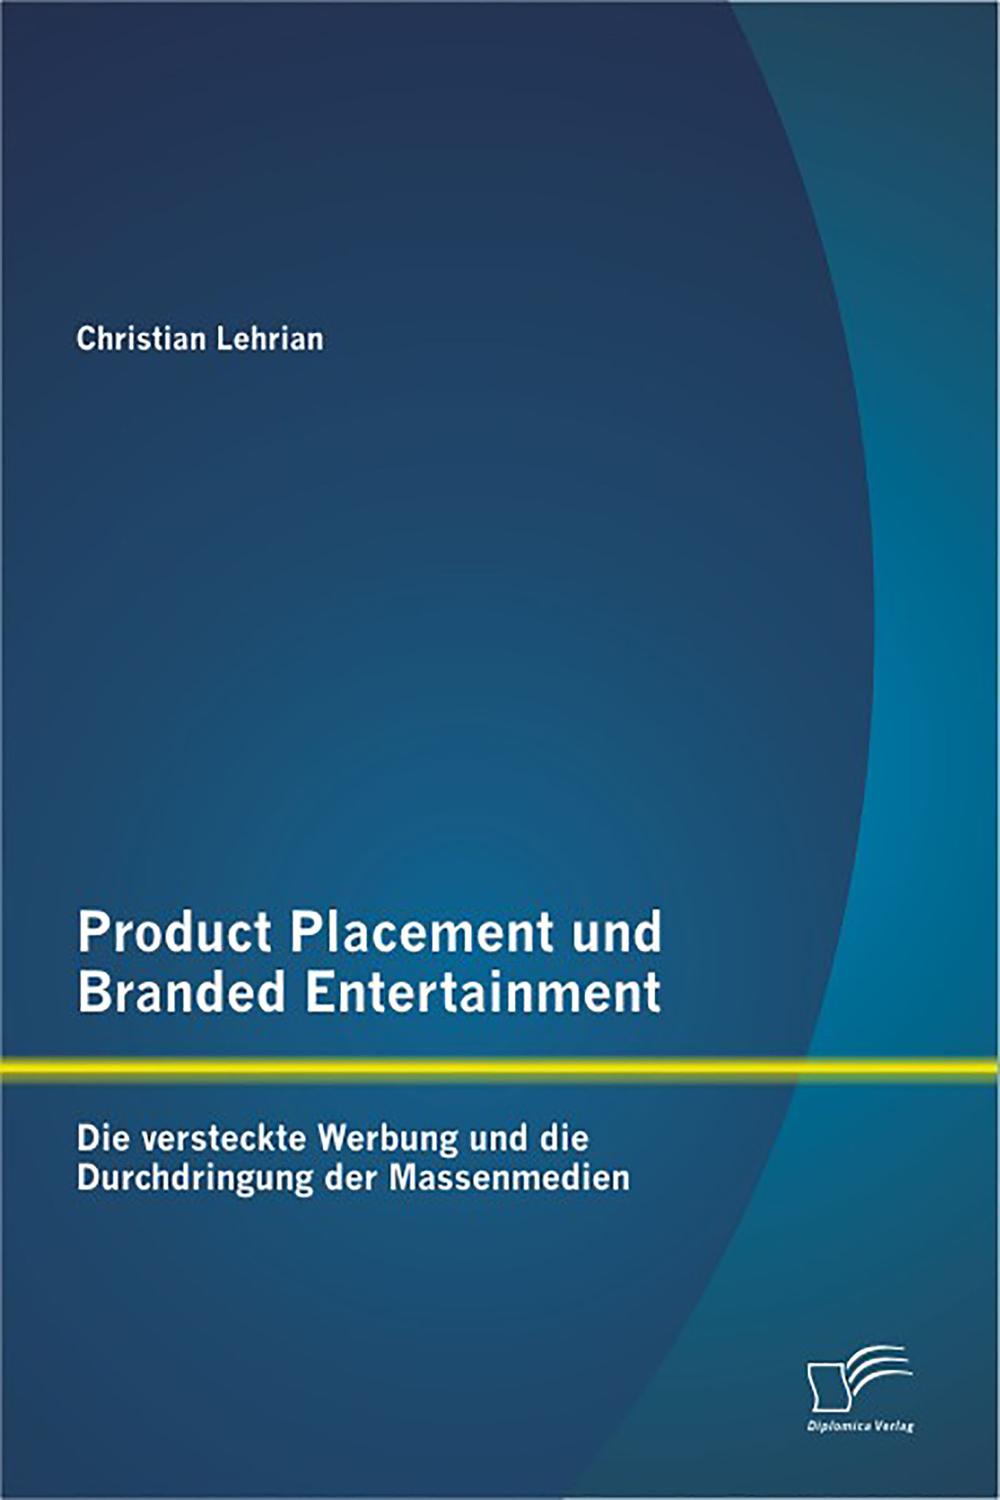 Product Placement und Branded Entertainment: Die versteckte Werbung und die Durchdringung der Massenmedien - Christian Lehrian